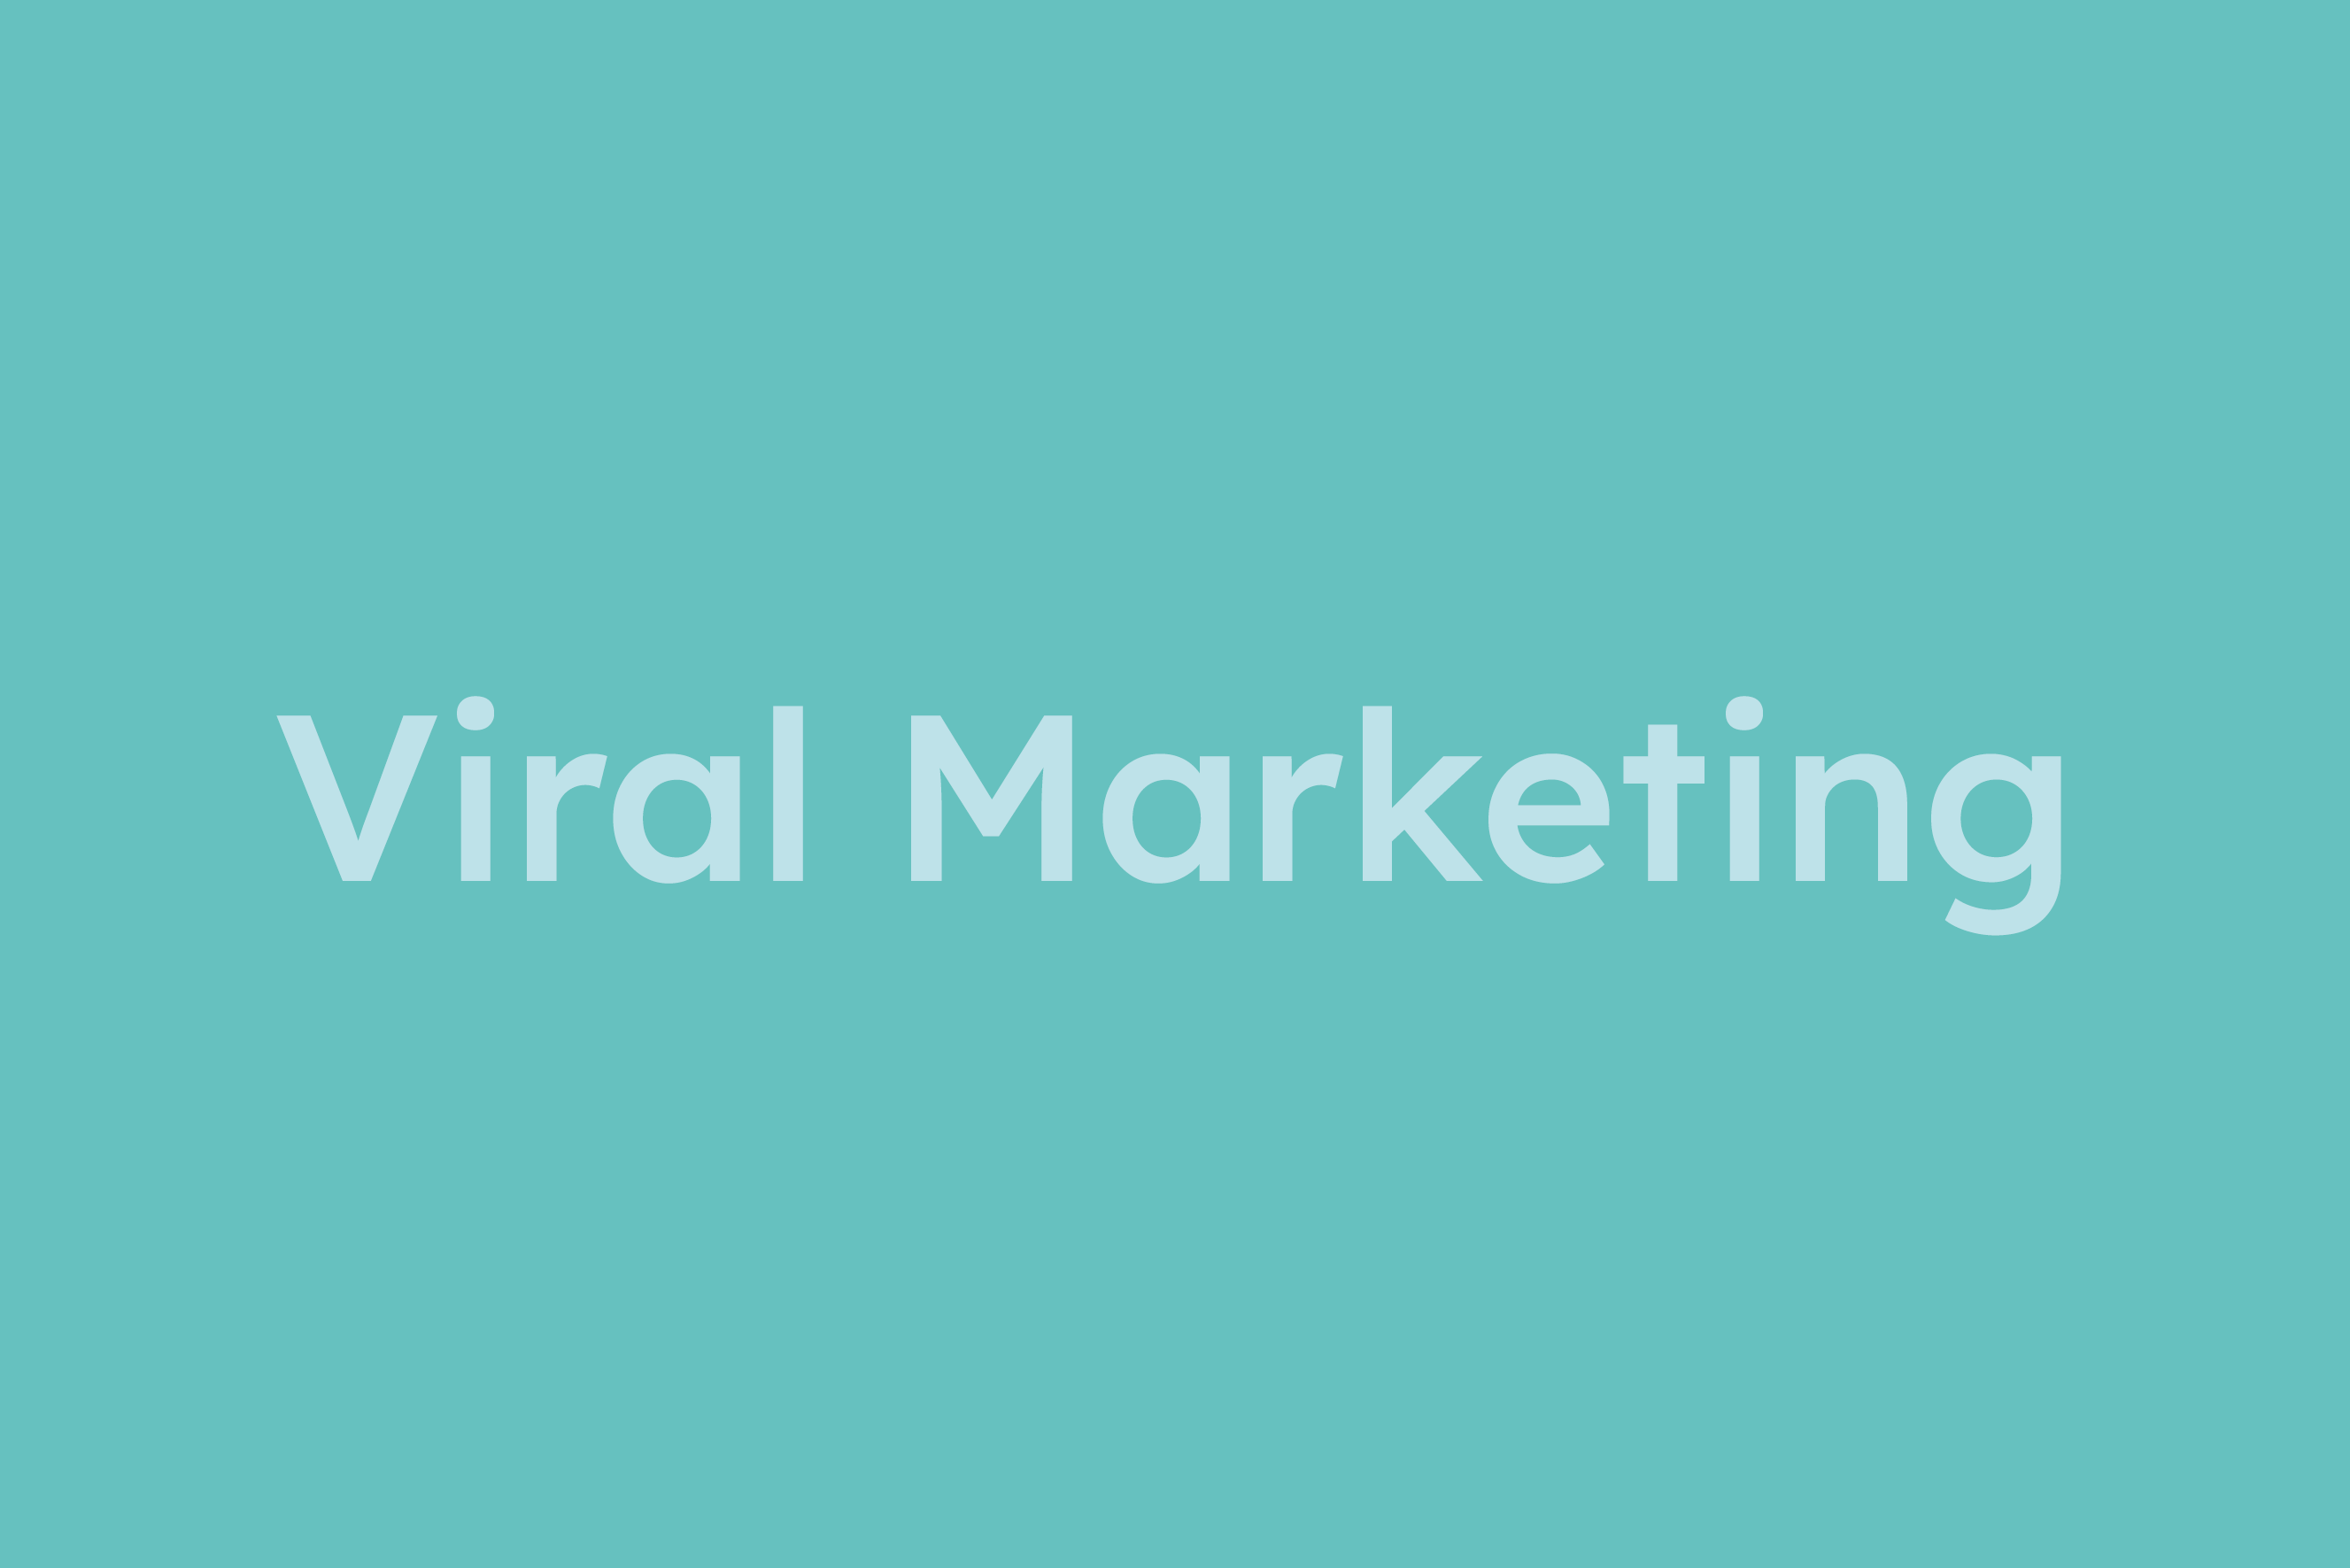 Viral Marketing erklärt im Glossar von Campaign